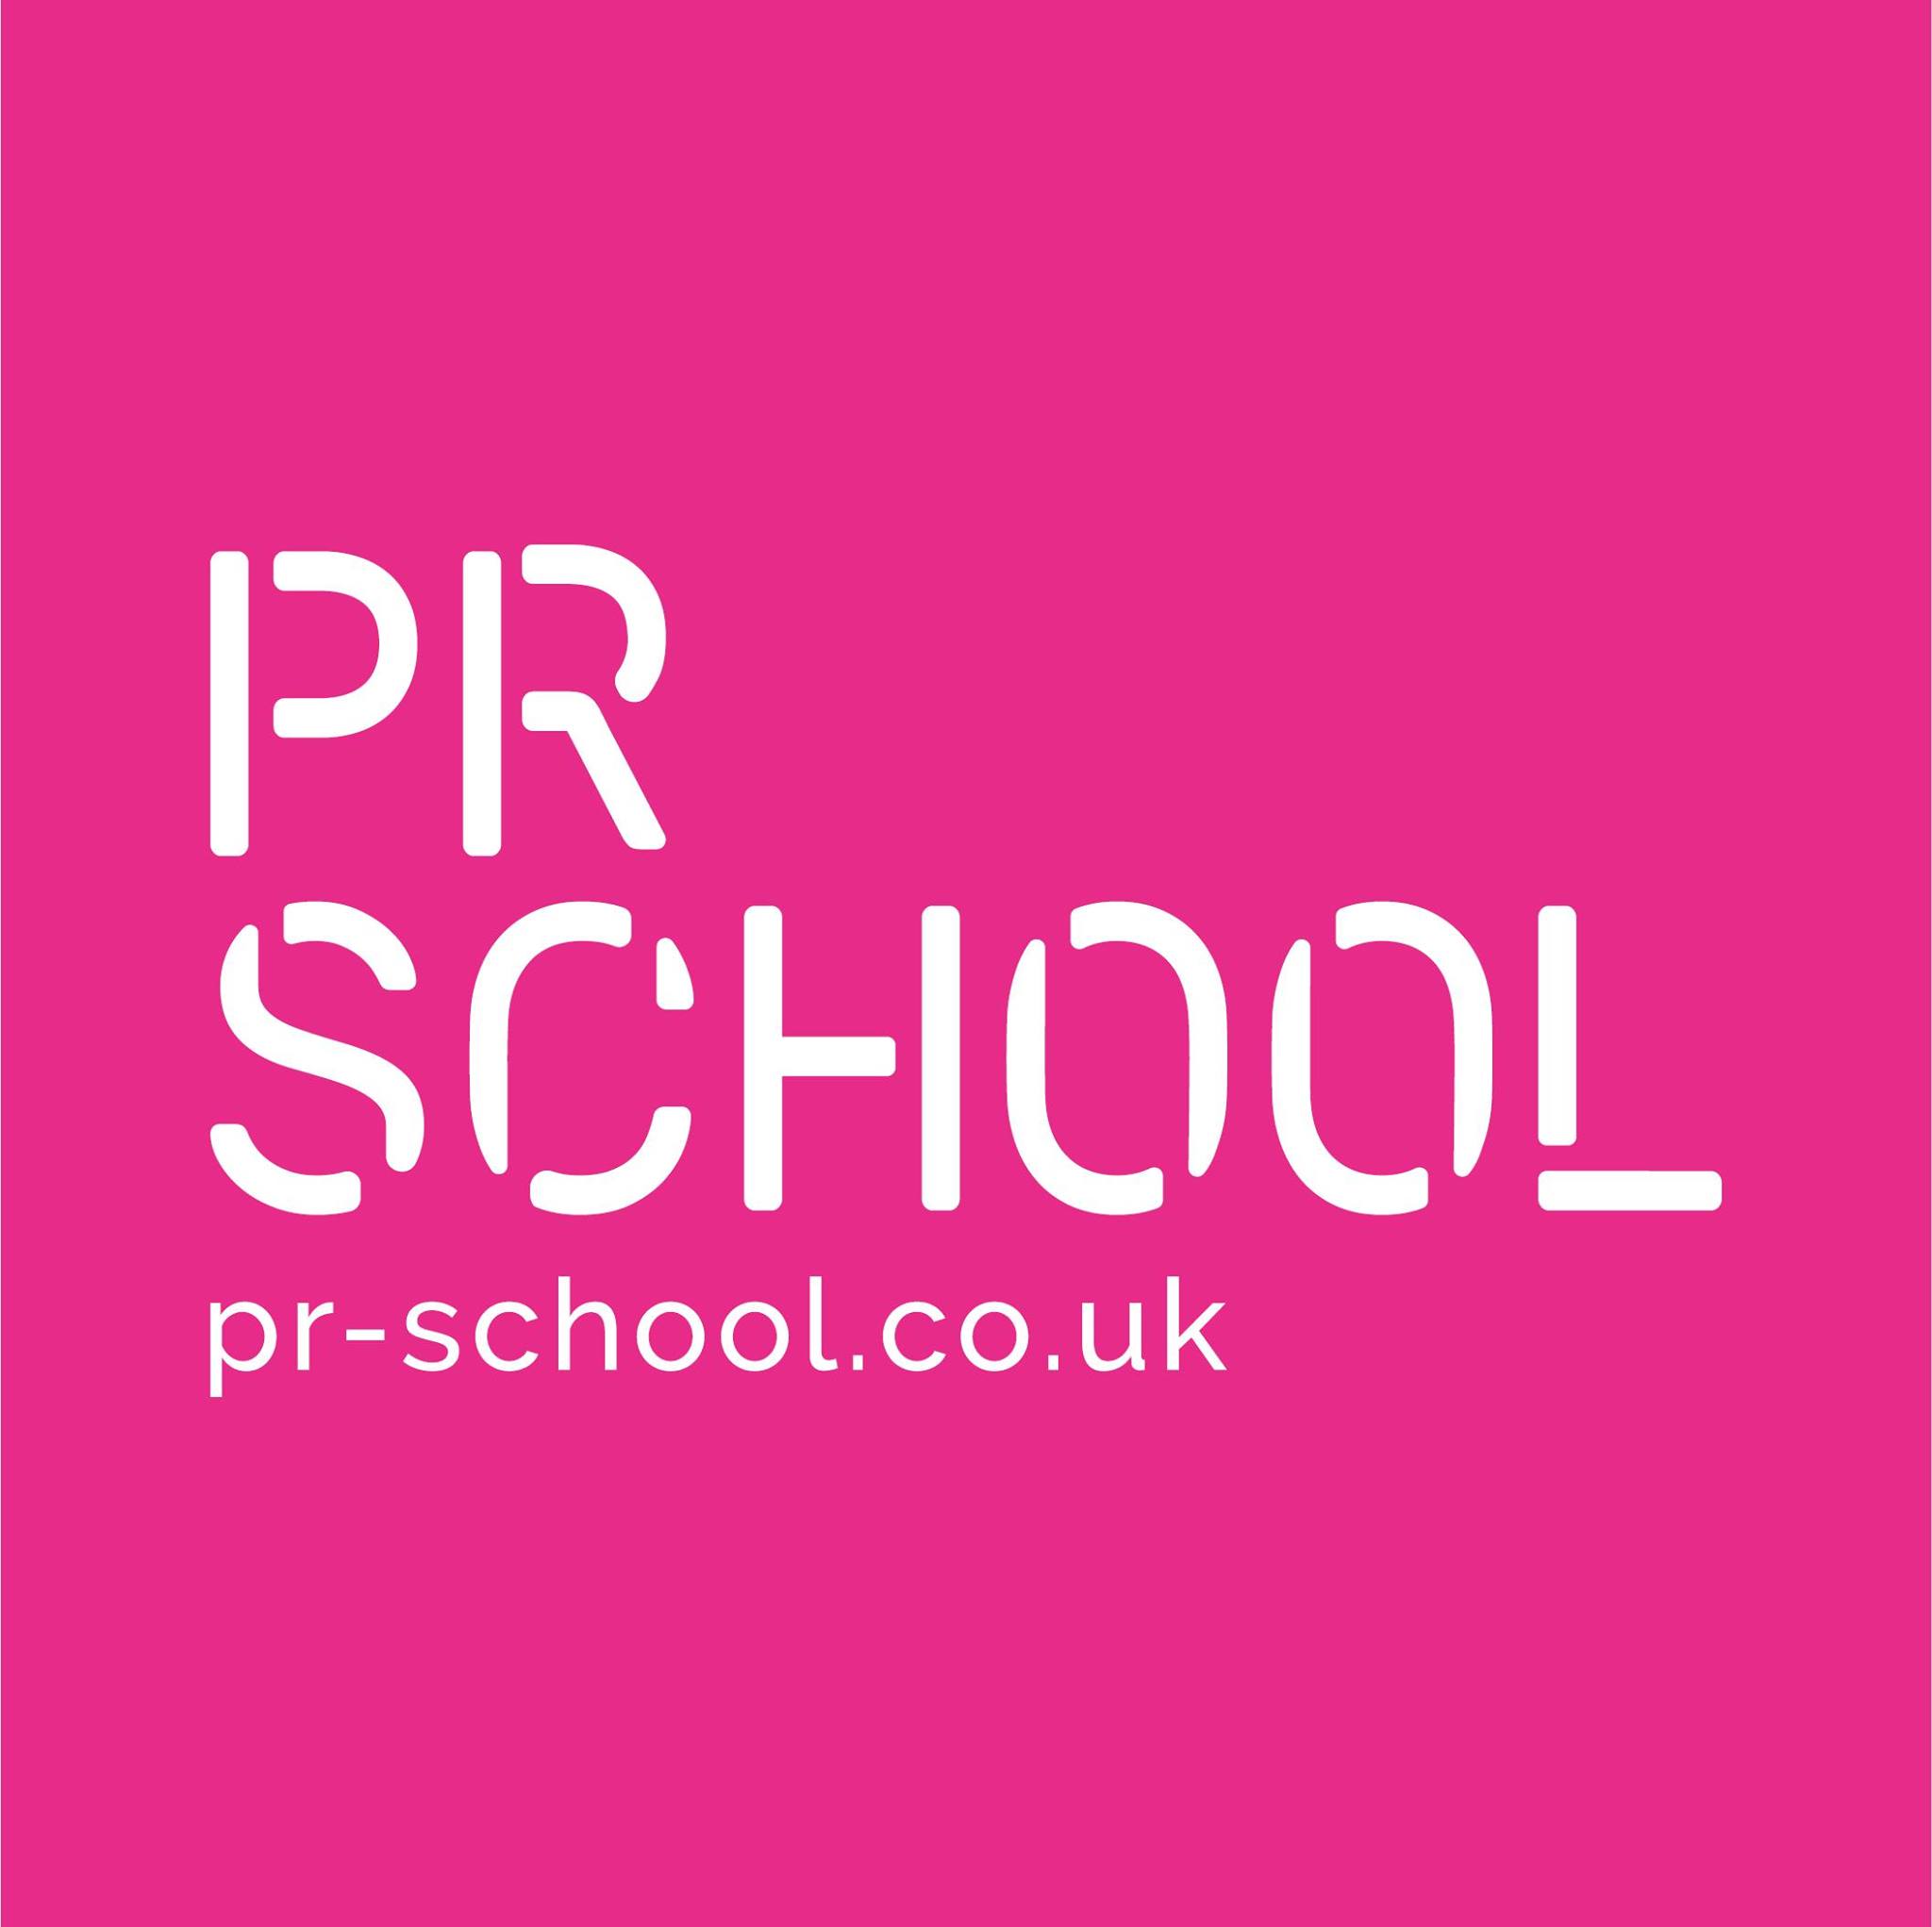 www.pr-school.co.uk